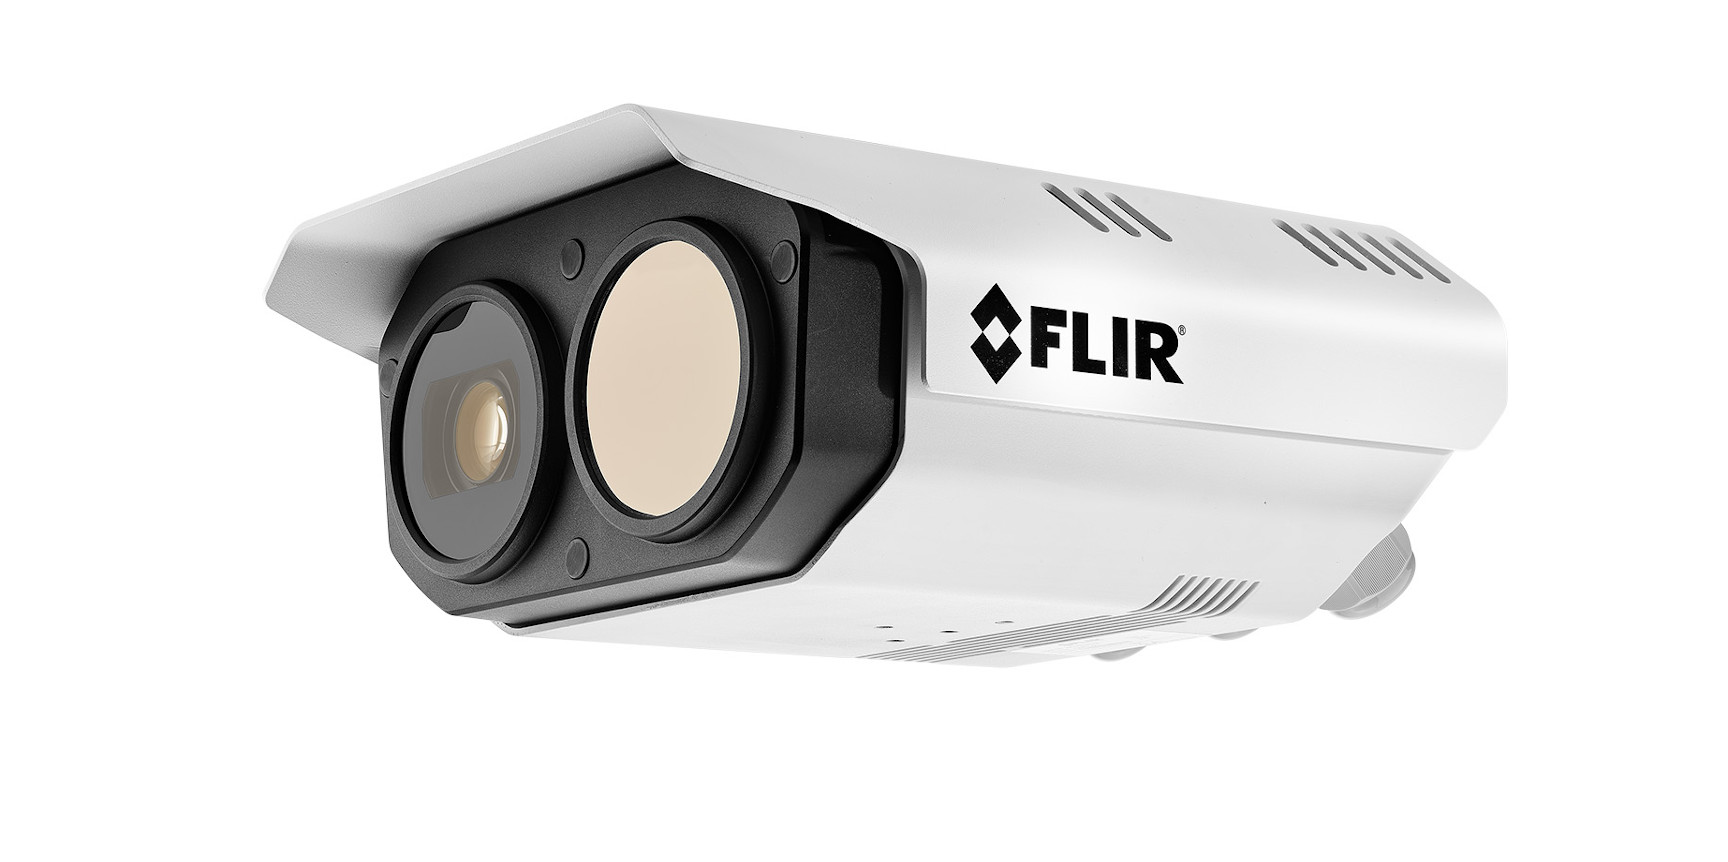 Vergrösserte Ansicht: FLIR Kamera ( CC BY-SA 4.0 / H.J. Brehm / Wikimedia Commons )